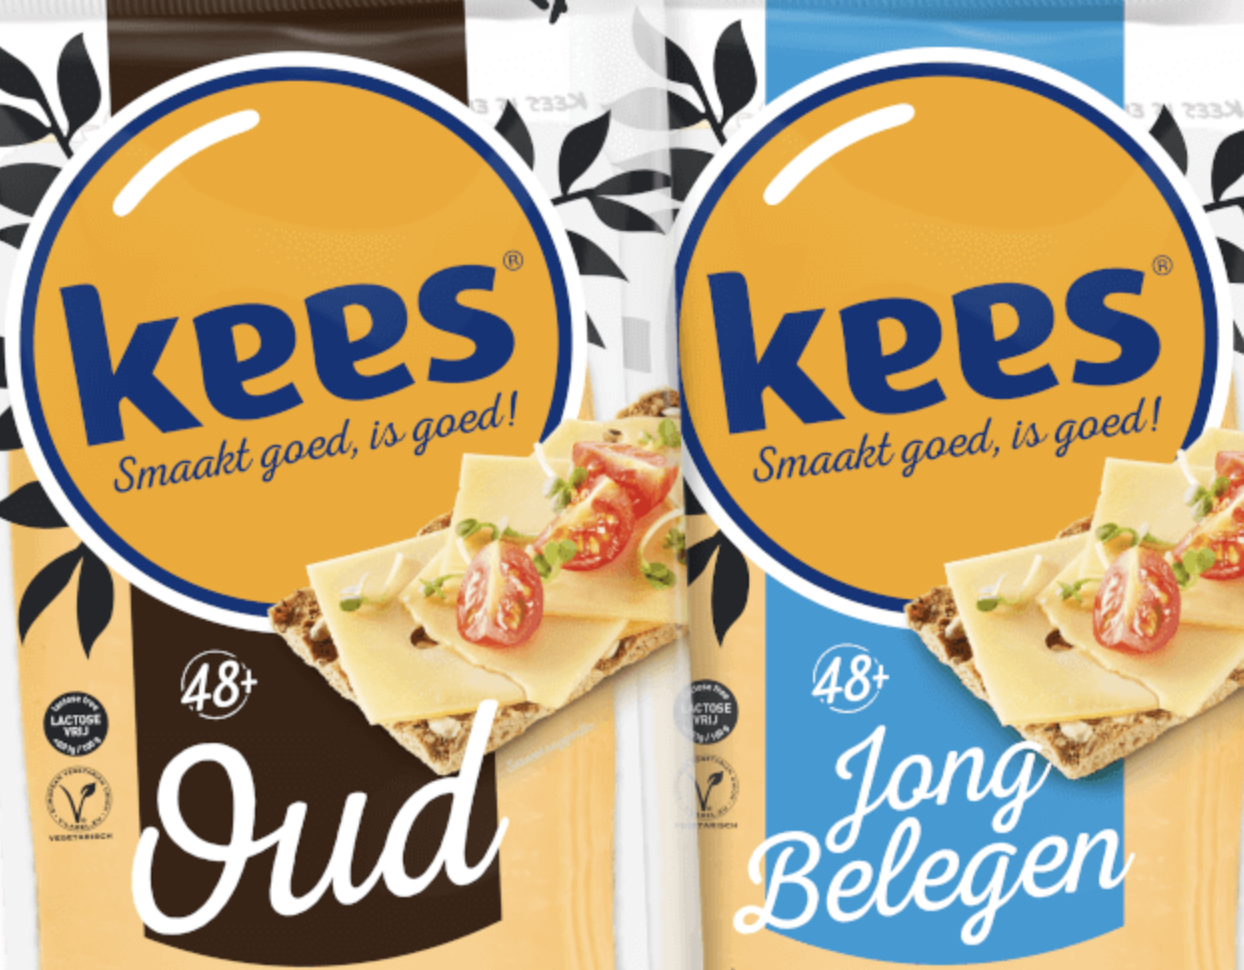 Westland Kaas neemt het merk 'Kees' over met nieuwe variant op kaas